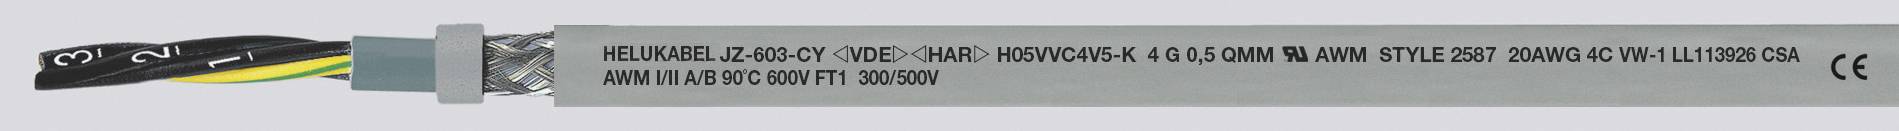 HELUKABEL JZ-603-CY Steuerleitung 4 G 0.75 mm² Grau 83732-1000 1000 m